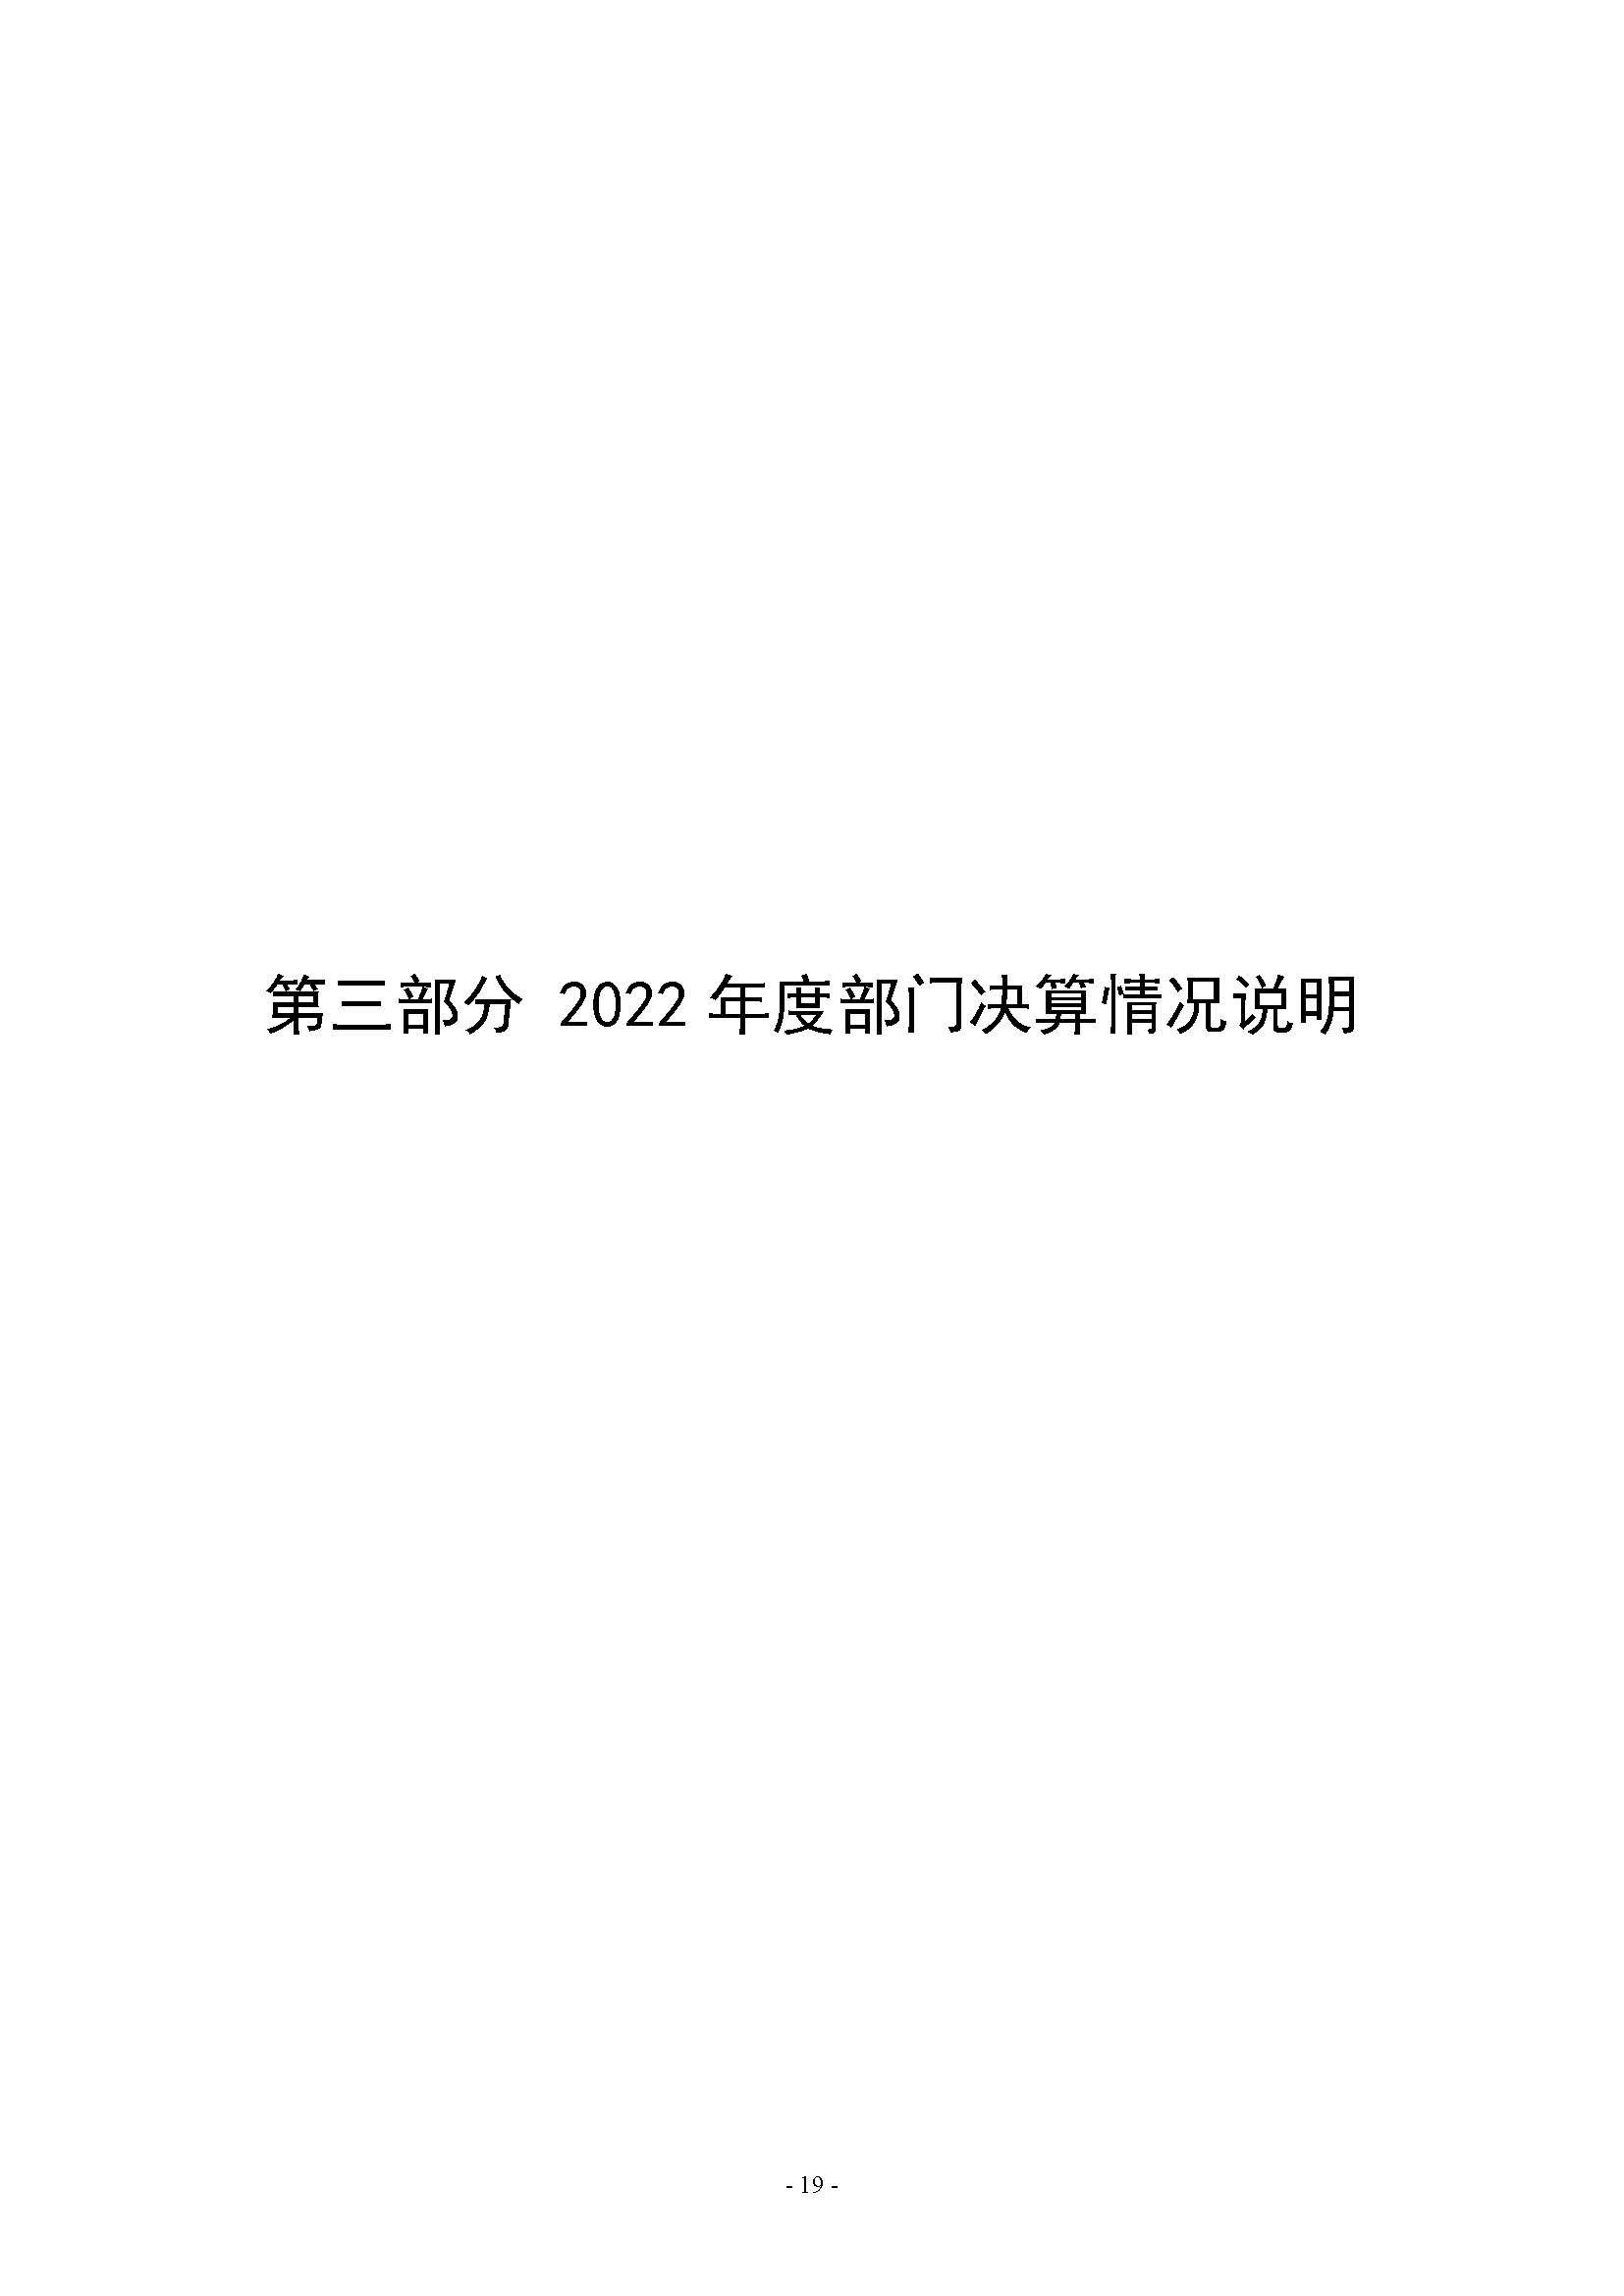 河南省水利科学研究院2022年年度省直部门决算公开(2)_页面_19.jpg